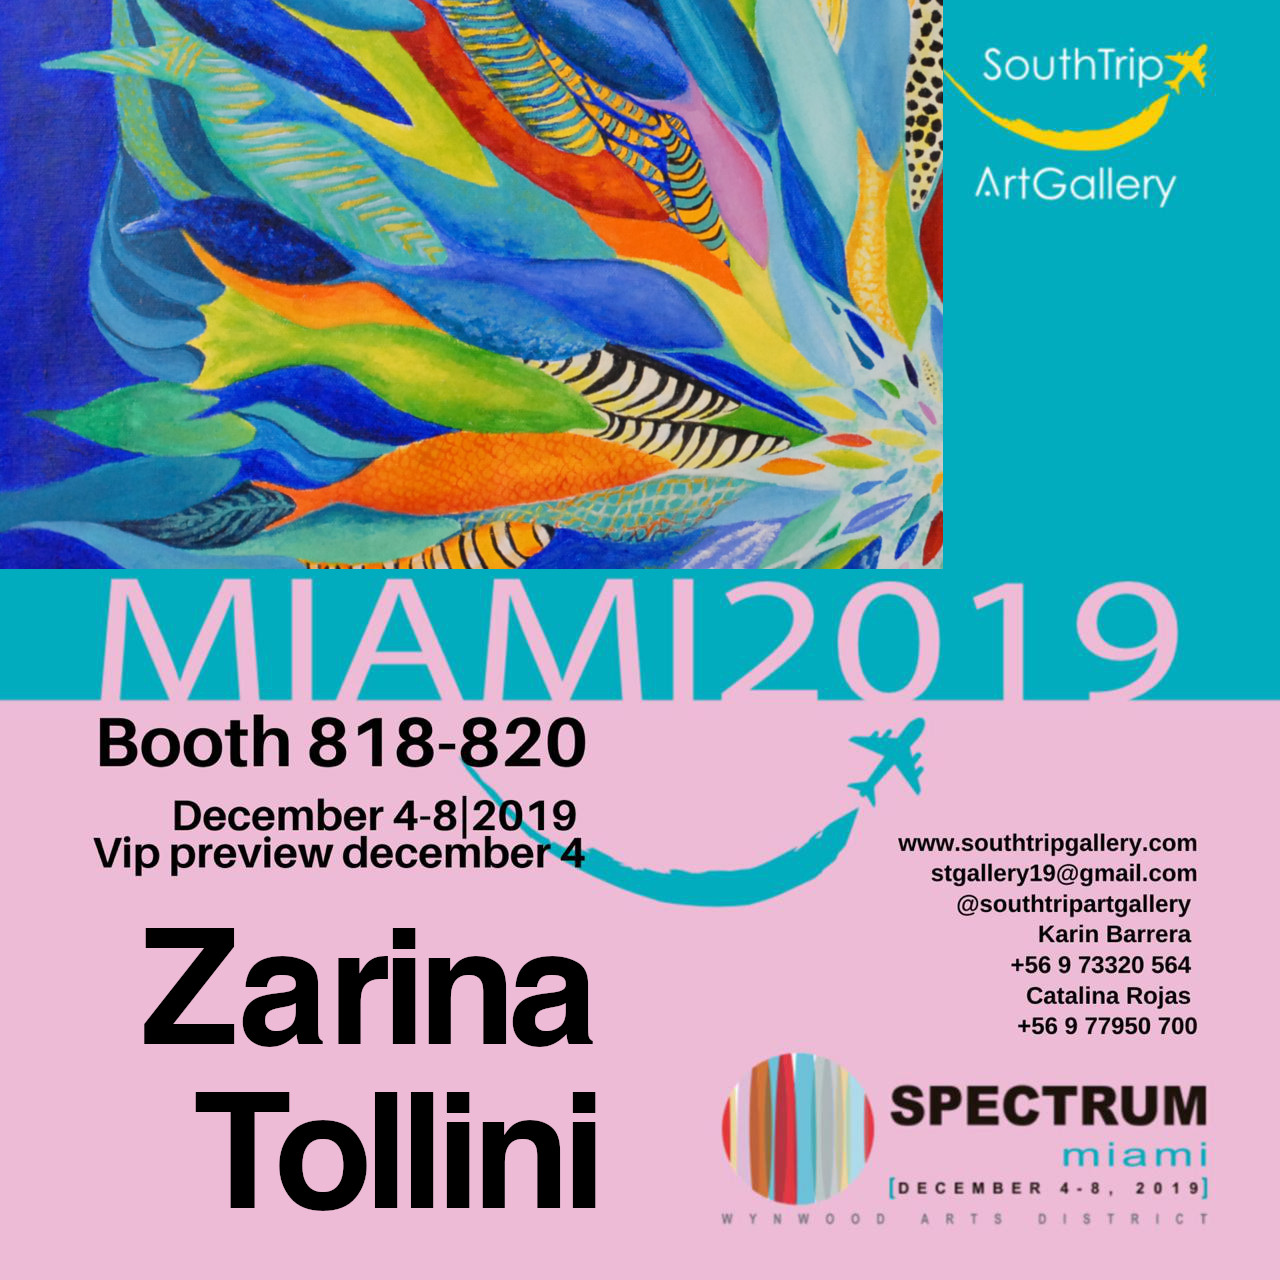 Spectrum Miami 2019